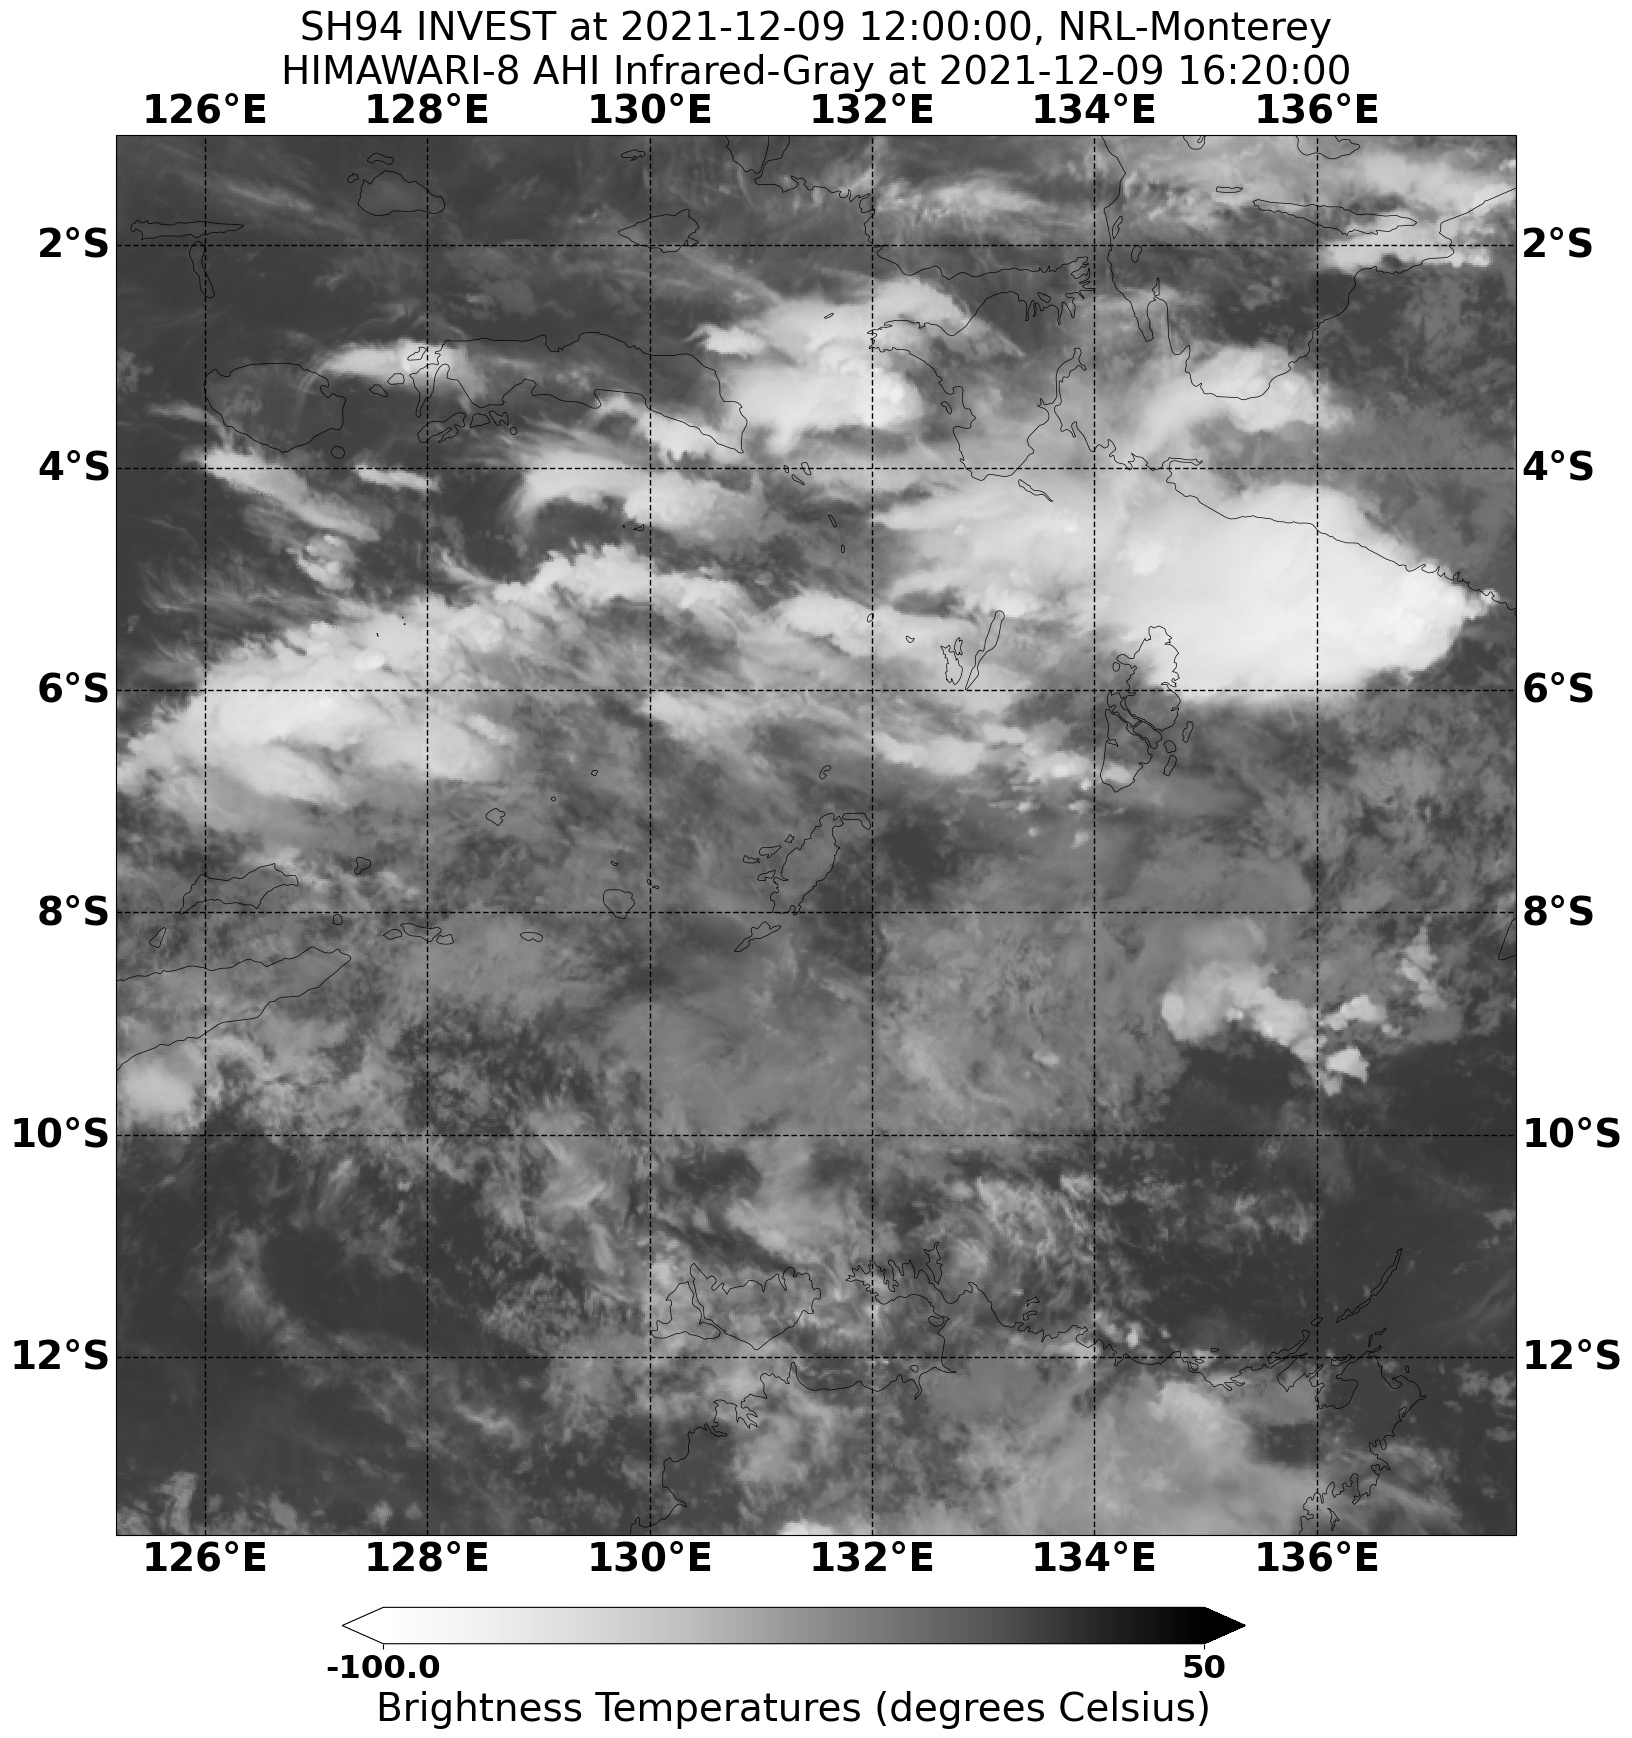 20211209.162000.SH942022.ahi.himawari-8.Infrared-Gray.15kts.100p0.1p0.jpg